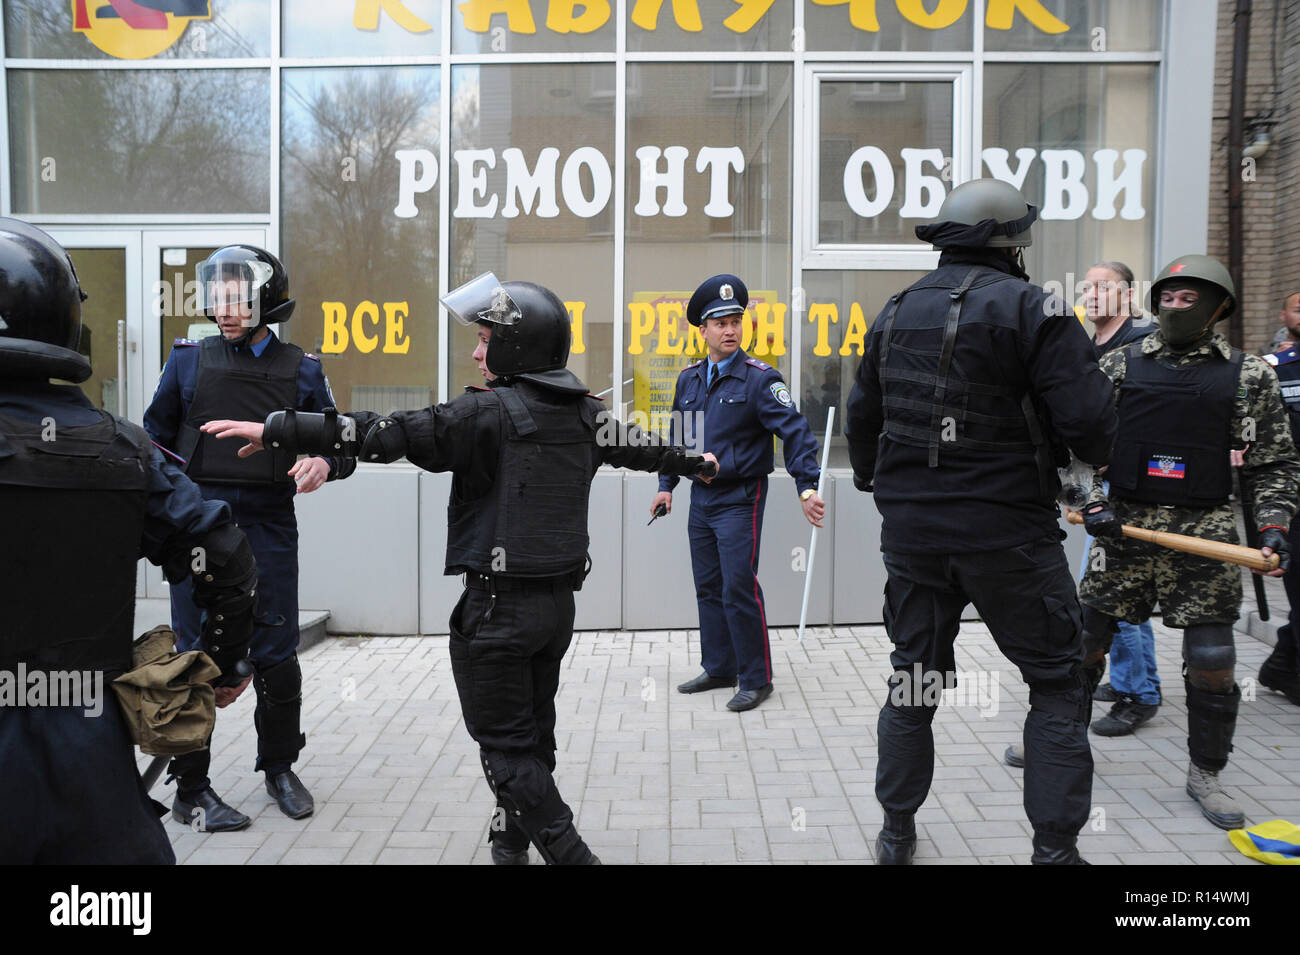 Aprile 28, 2014 - Donetsk, Ucraina: Ucraino polizia si muovano per proteggere una dimostrazione pacifica degli ucraini in favore dell unità del loro paese. Nonostante la protezione della polizia, un gruppo di pro-Russia separatisti attaccato violentemente e disperso i manifestanti pacifici.La pro-russo gruppo separatista, per la maggior parte giovani di Balaclava, allora celebrato le loro azioni da urlando avevano fracassato "fascisti". Une manifestazione pacifique en faveur de l'unite de l'Ucraina a Donetsk est brutalement dispersee par des groupes separatistes pro-russes armes de manganelli et, pour certuni, d'armes blanc Foto Stock